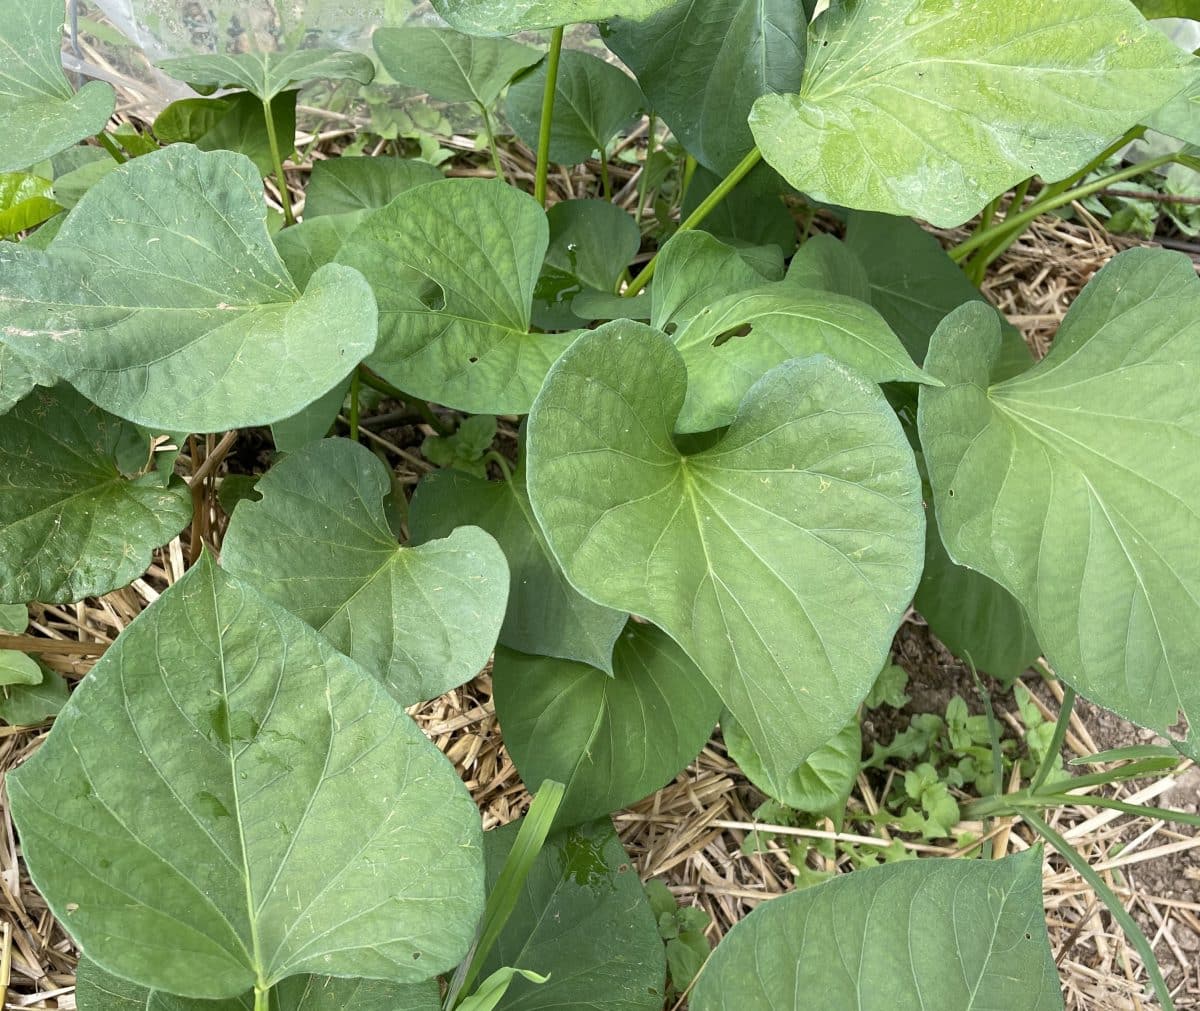 Sweet potato leaves